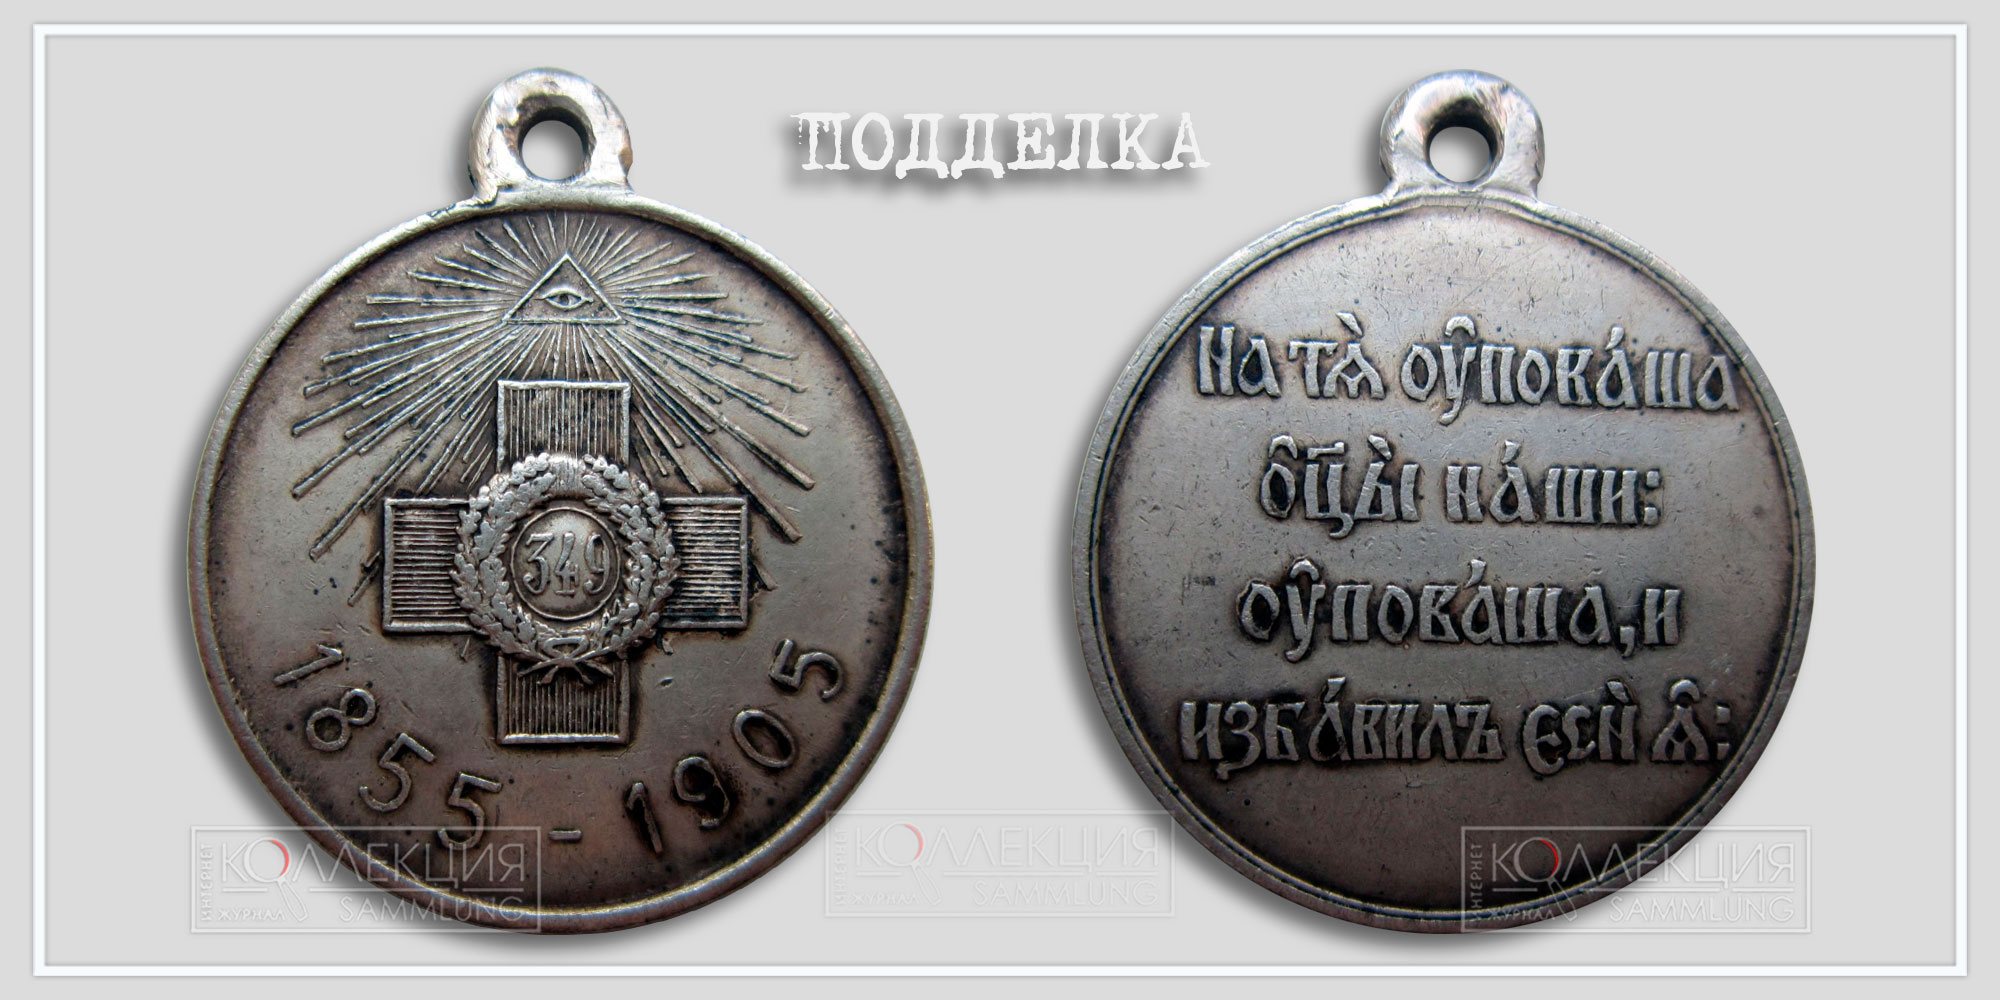 Медаль «В память 50-летия защиты Севастополя» 1855-1905 (копия)